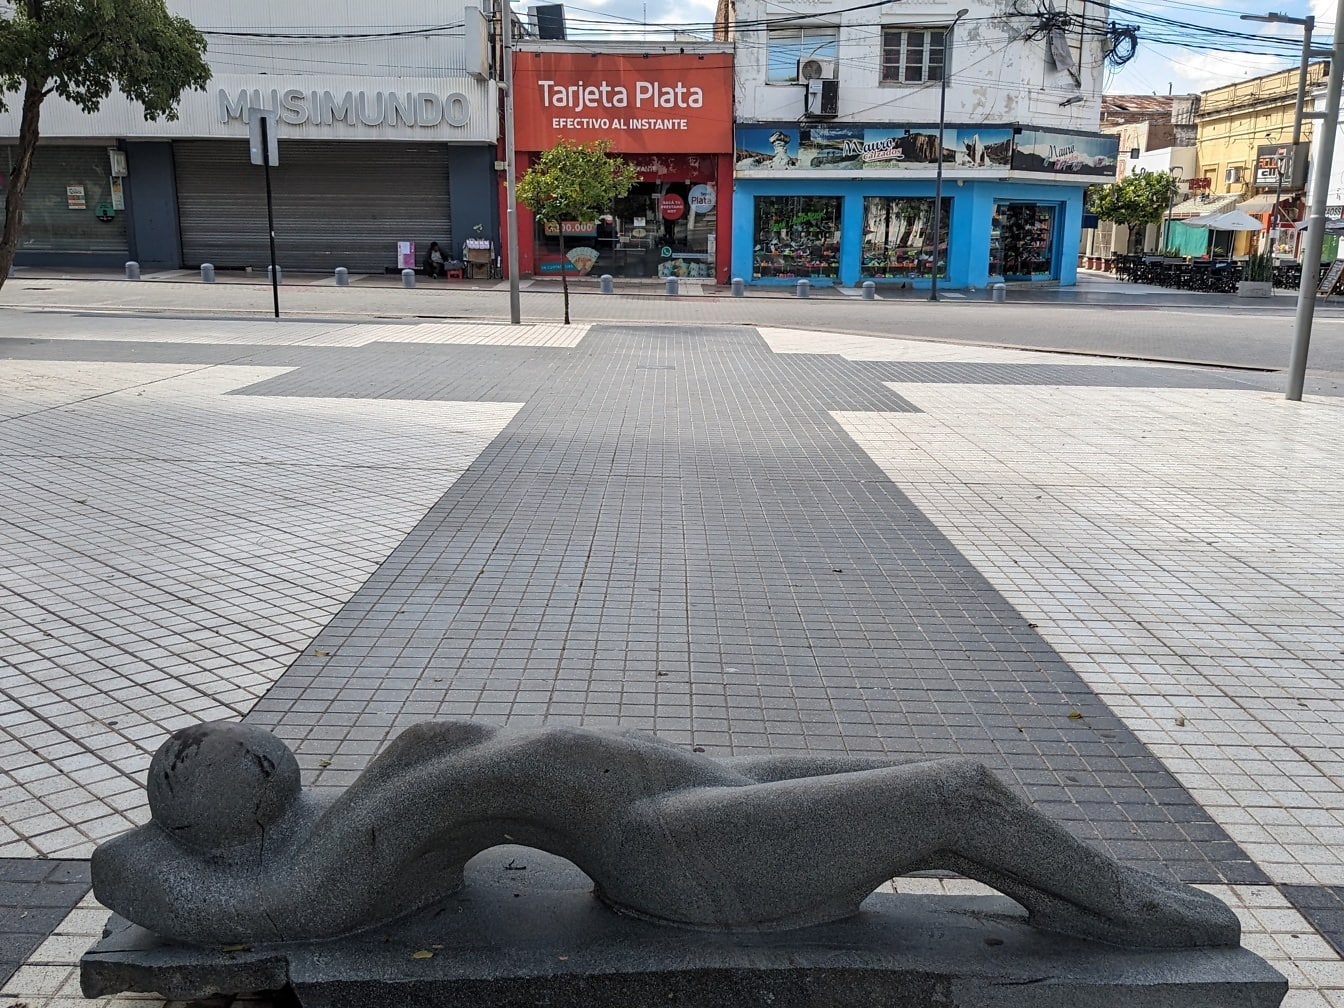 Estátua de granito preto de uma mulher deitada em uma calçada